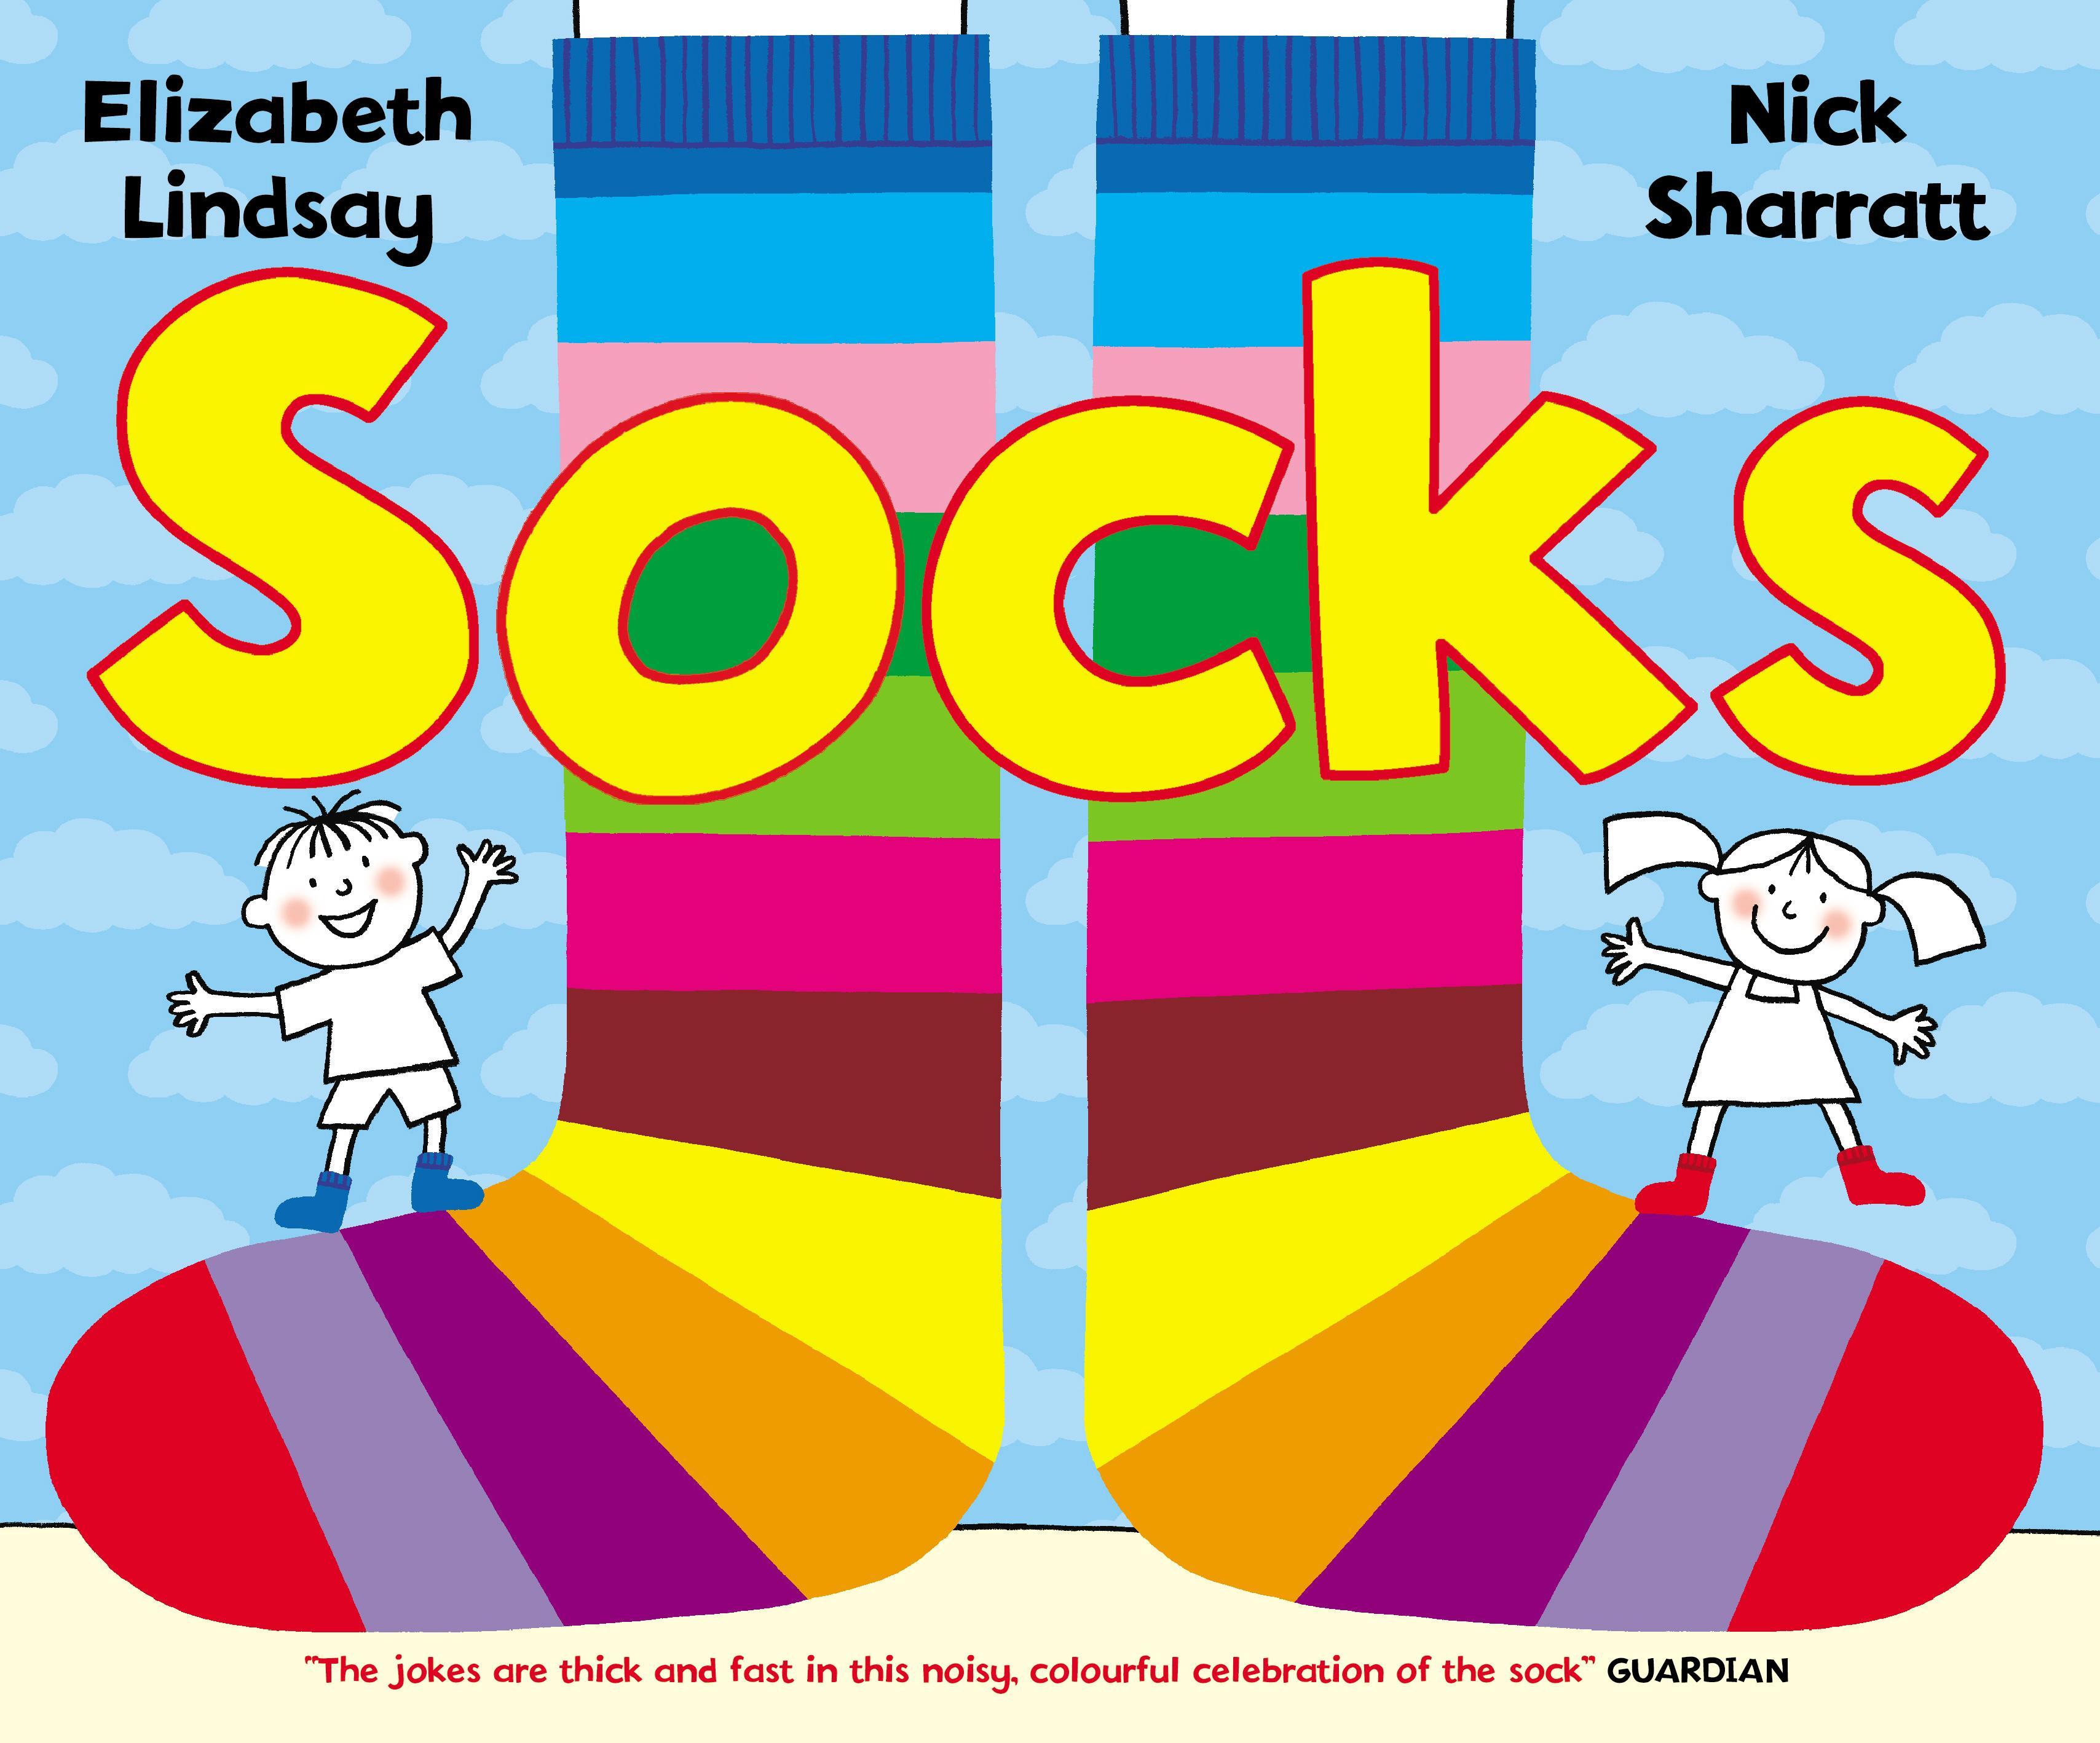 Socks - Nick Sharratt